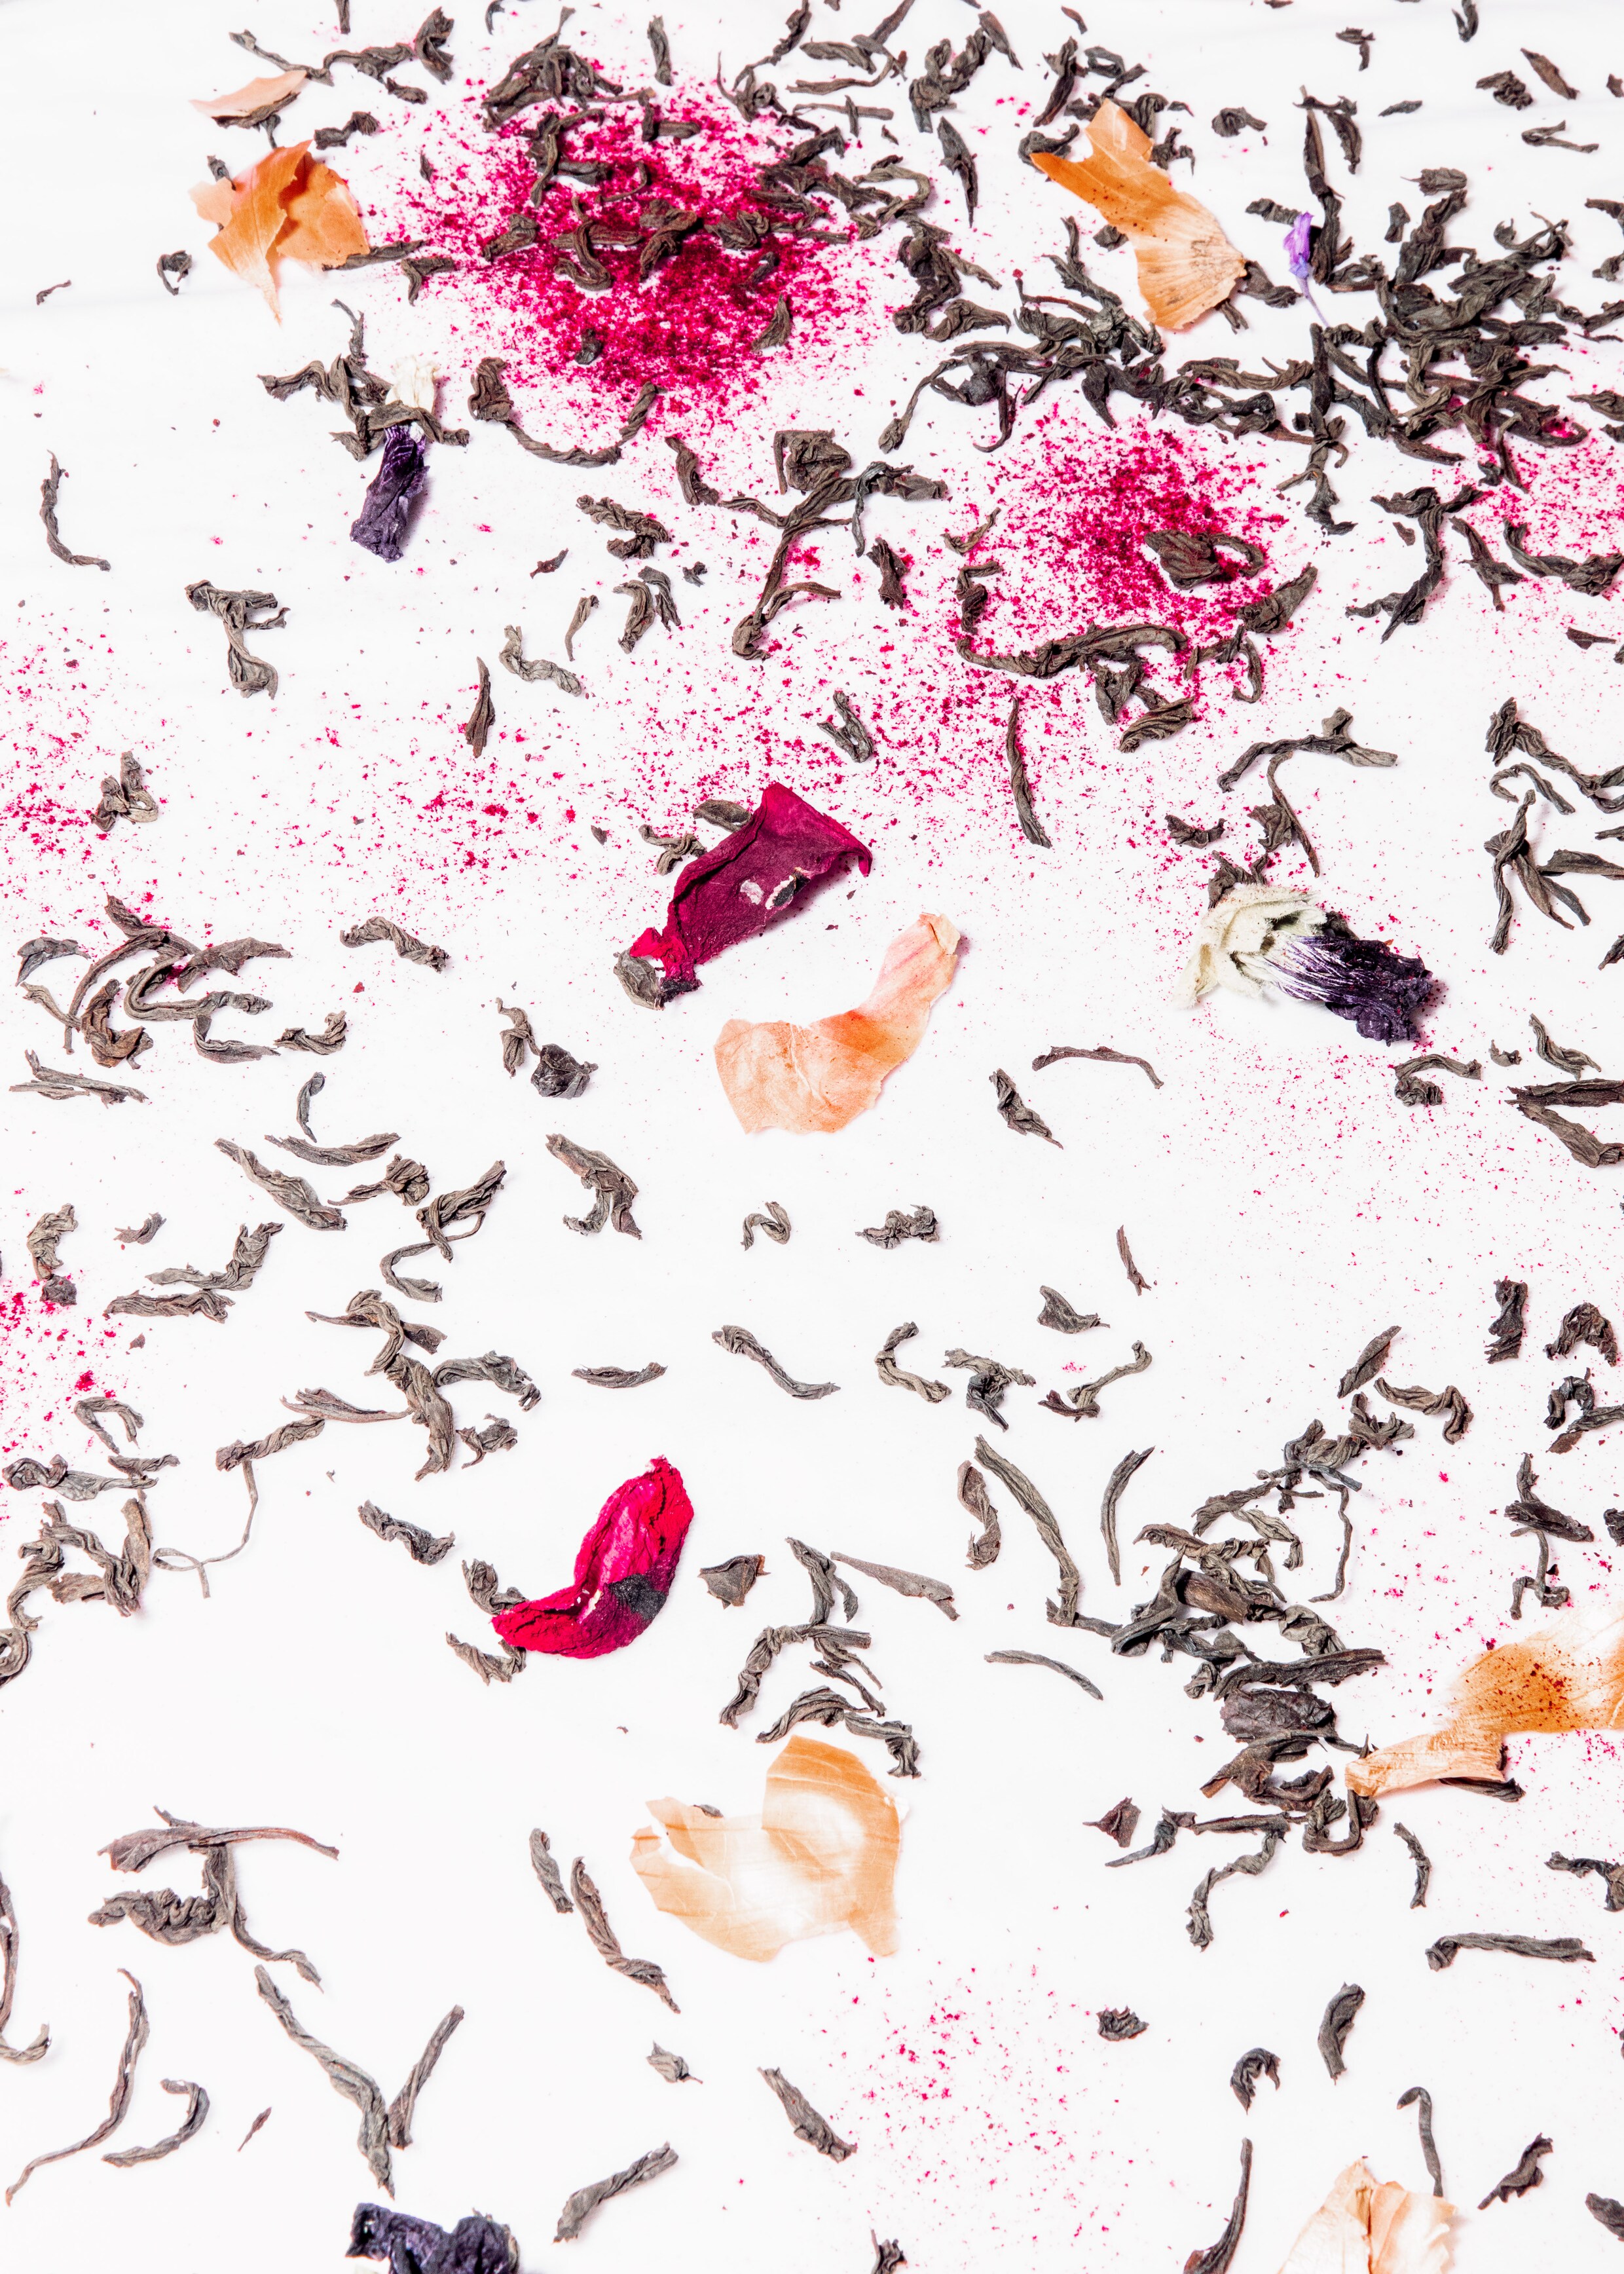 Voor de perfecte ‘bundle-dye’ gebruik je natuurlijke materialen als thee, bloemen en uienschillen